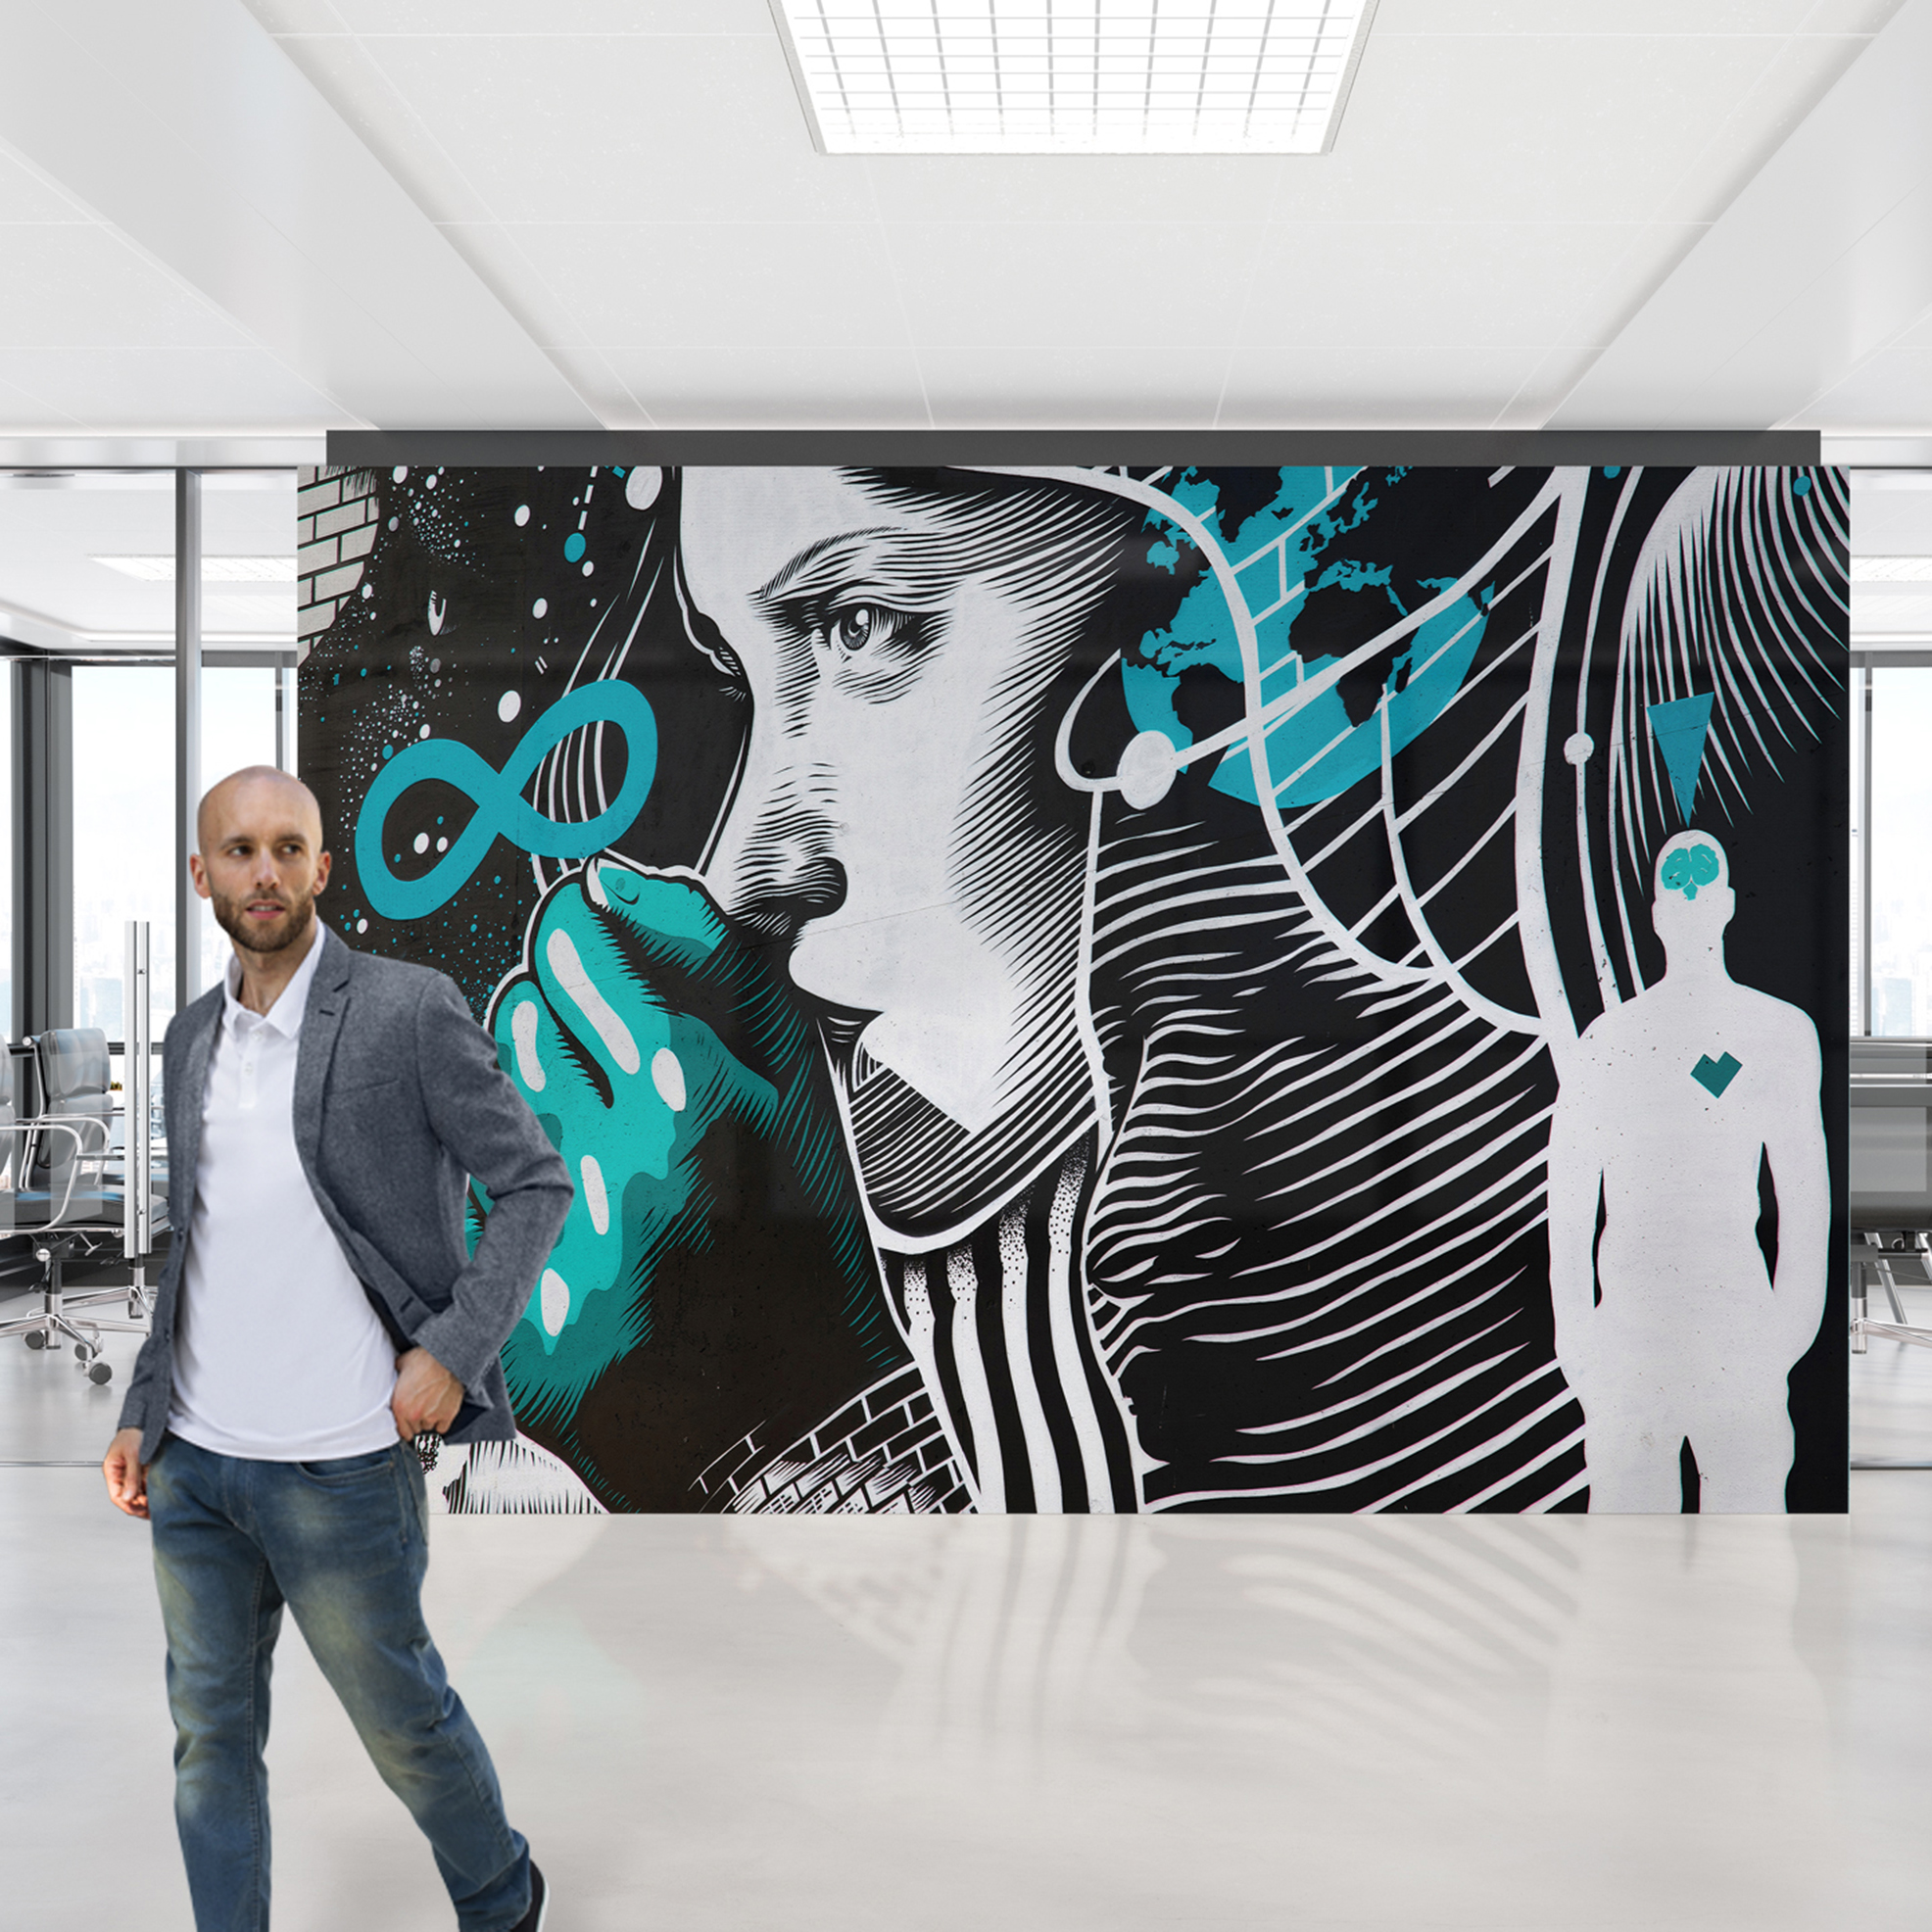 Egal ob in der Lobby oder im Office, schafft es dieses Wandbild der Tapeten Manufaktur Hohenberger, dass sich Innovation mit nachhaltiger Produktion kombinieren lässt.